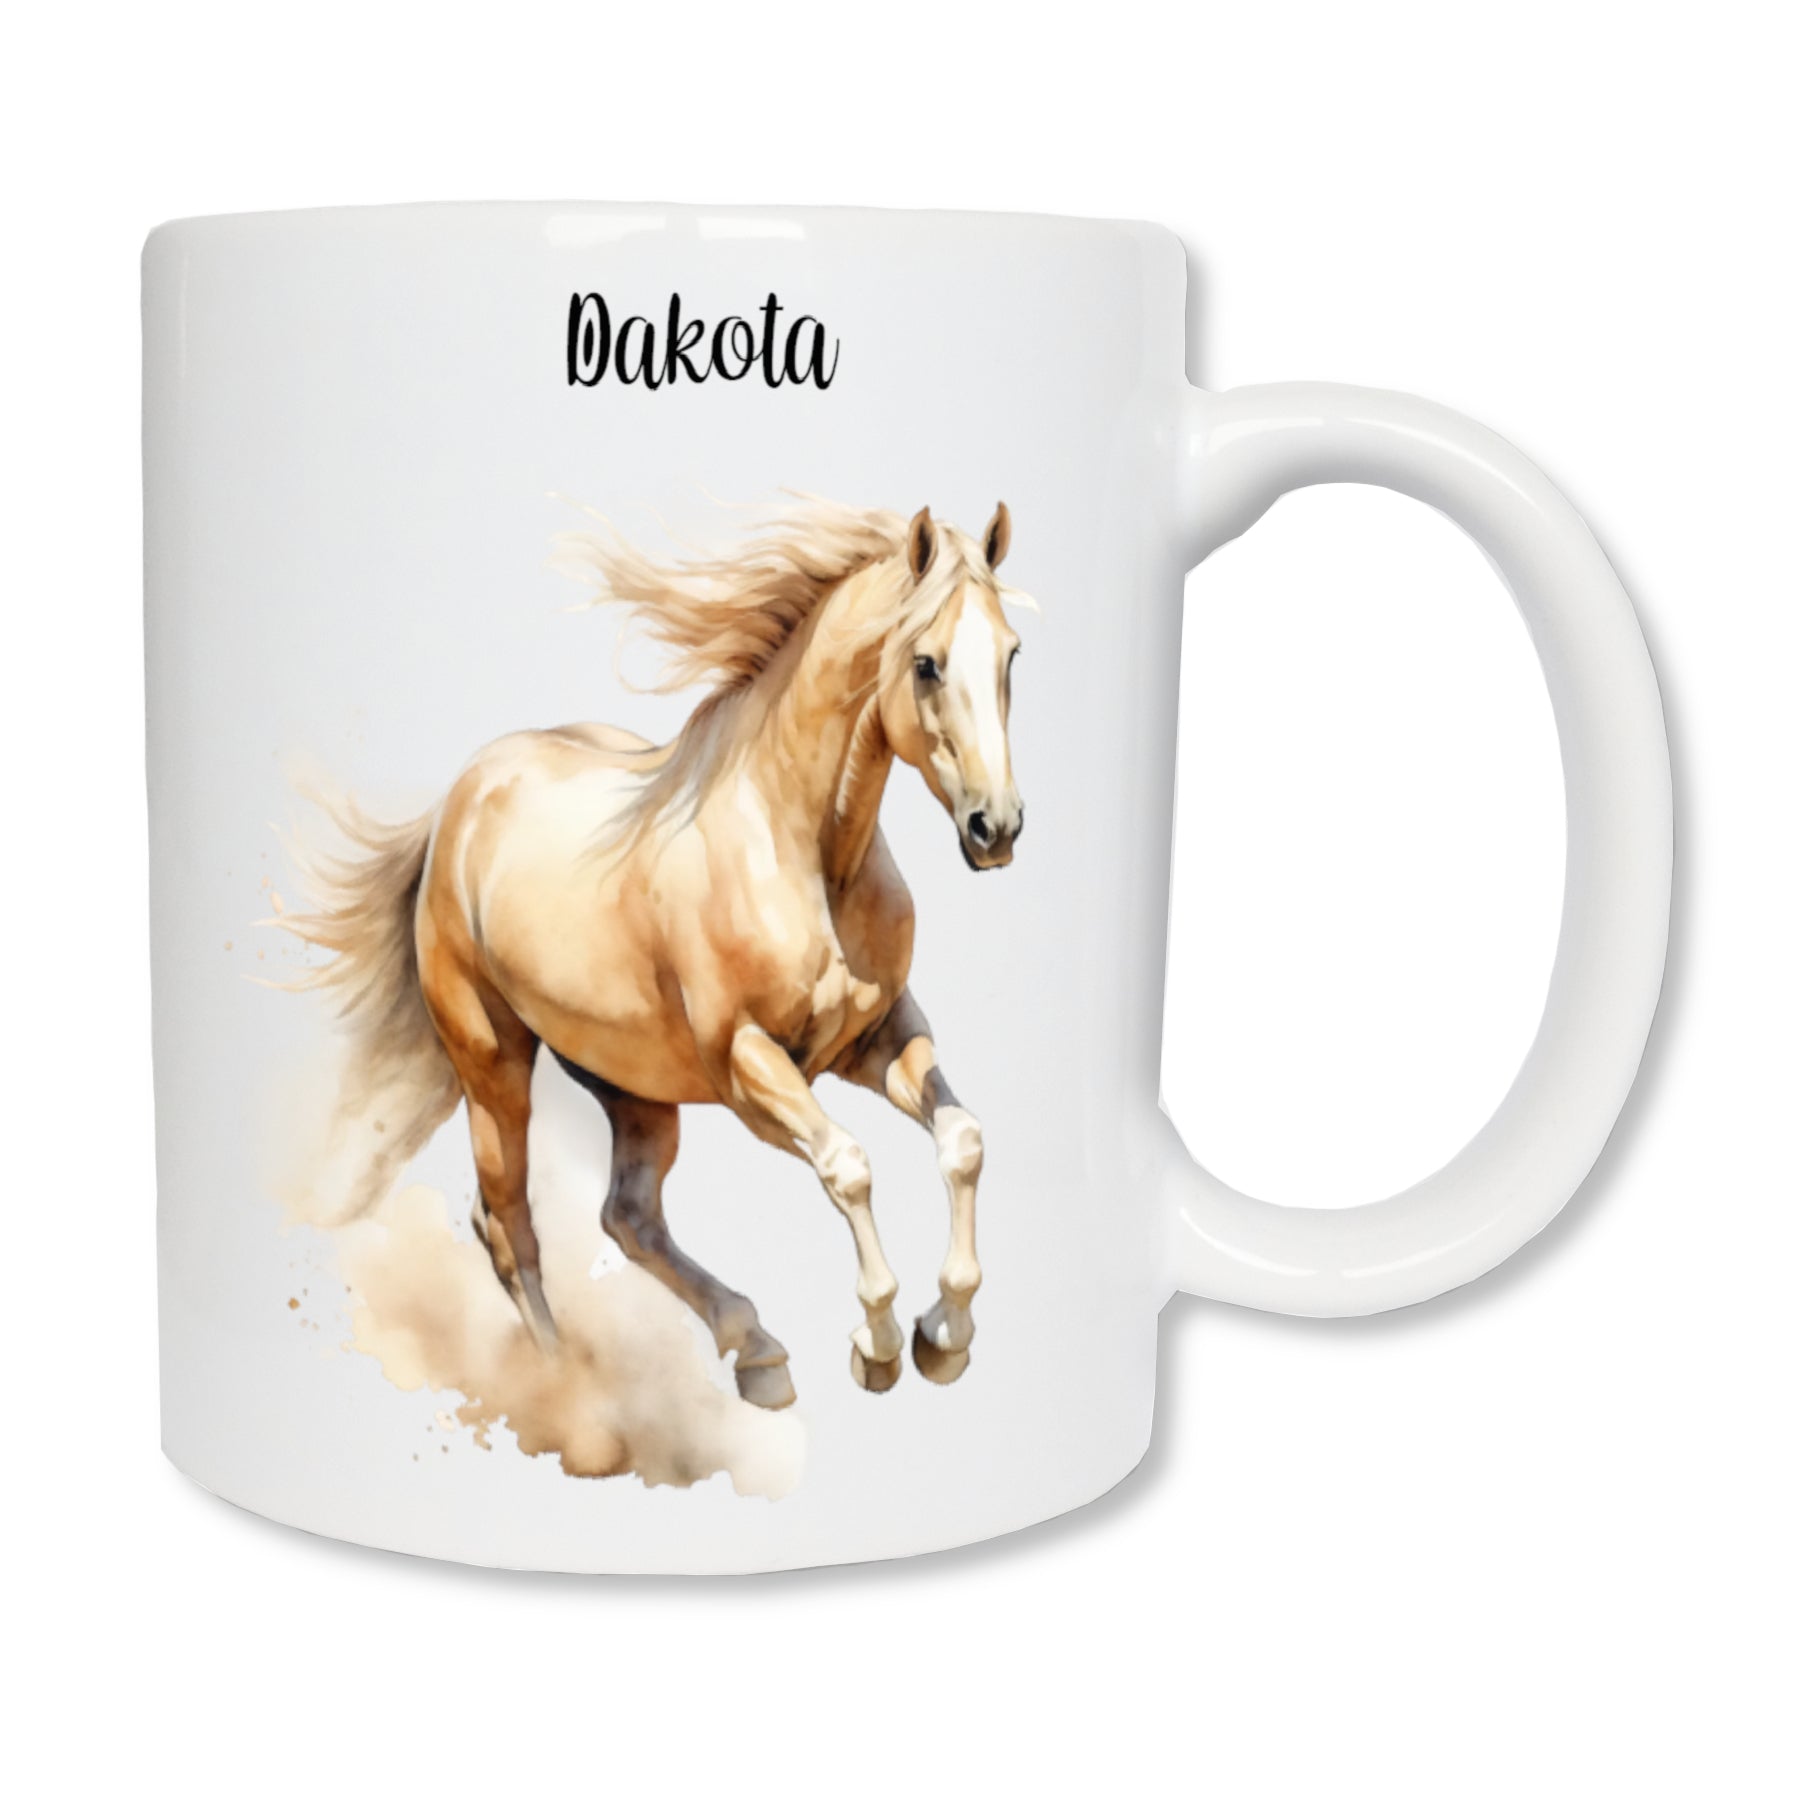 Mug personnalisé en céramique blanc représentant un cheval au galop de couleur crème, avec le prénom "Dakota" au dessus